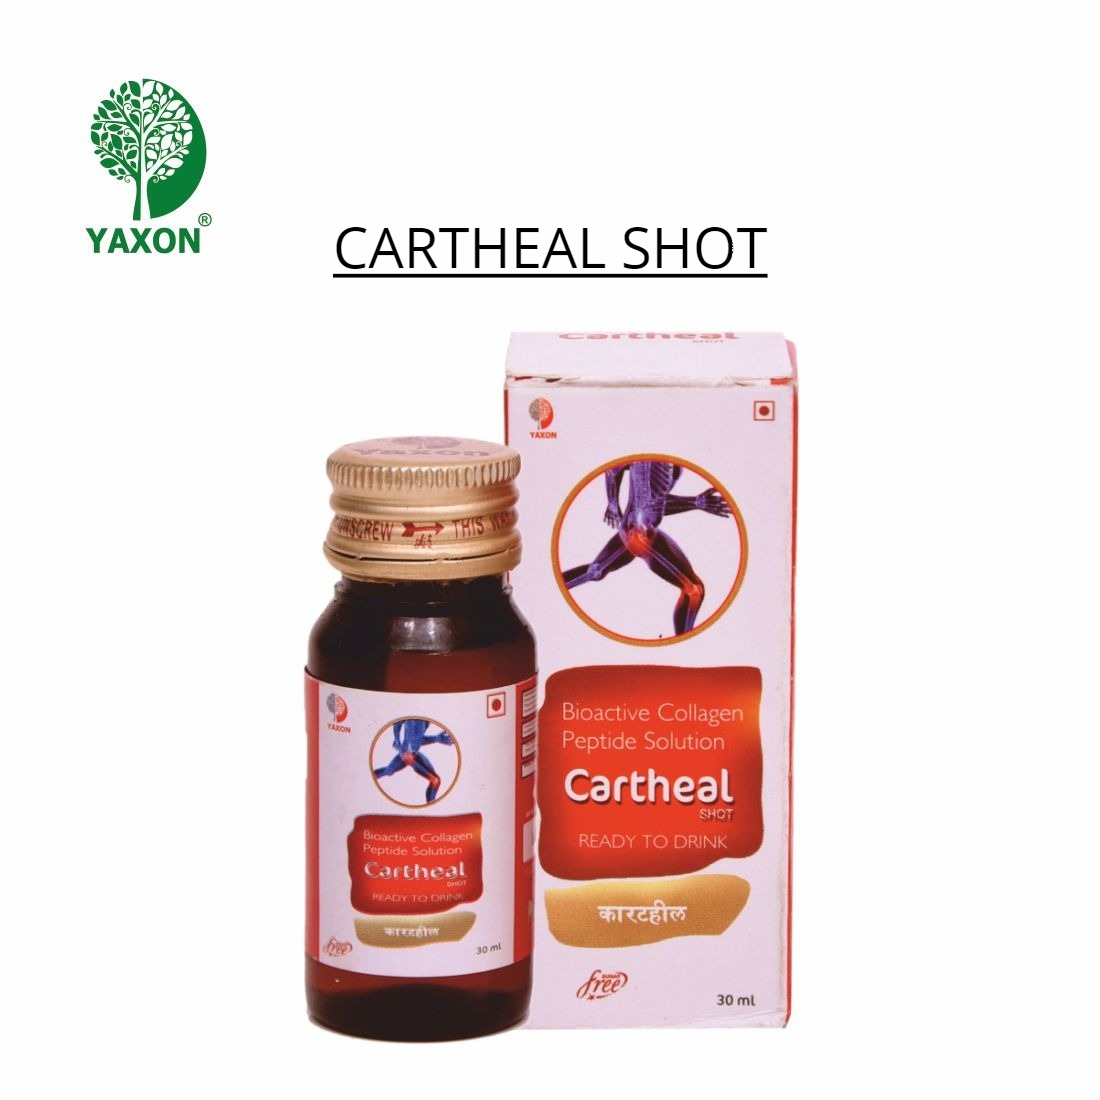 YAXON CARTHEAL SHOT Syrup